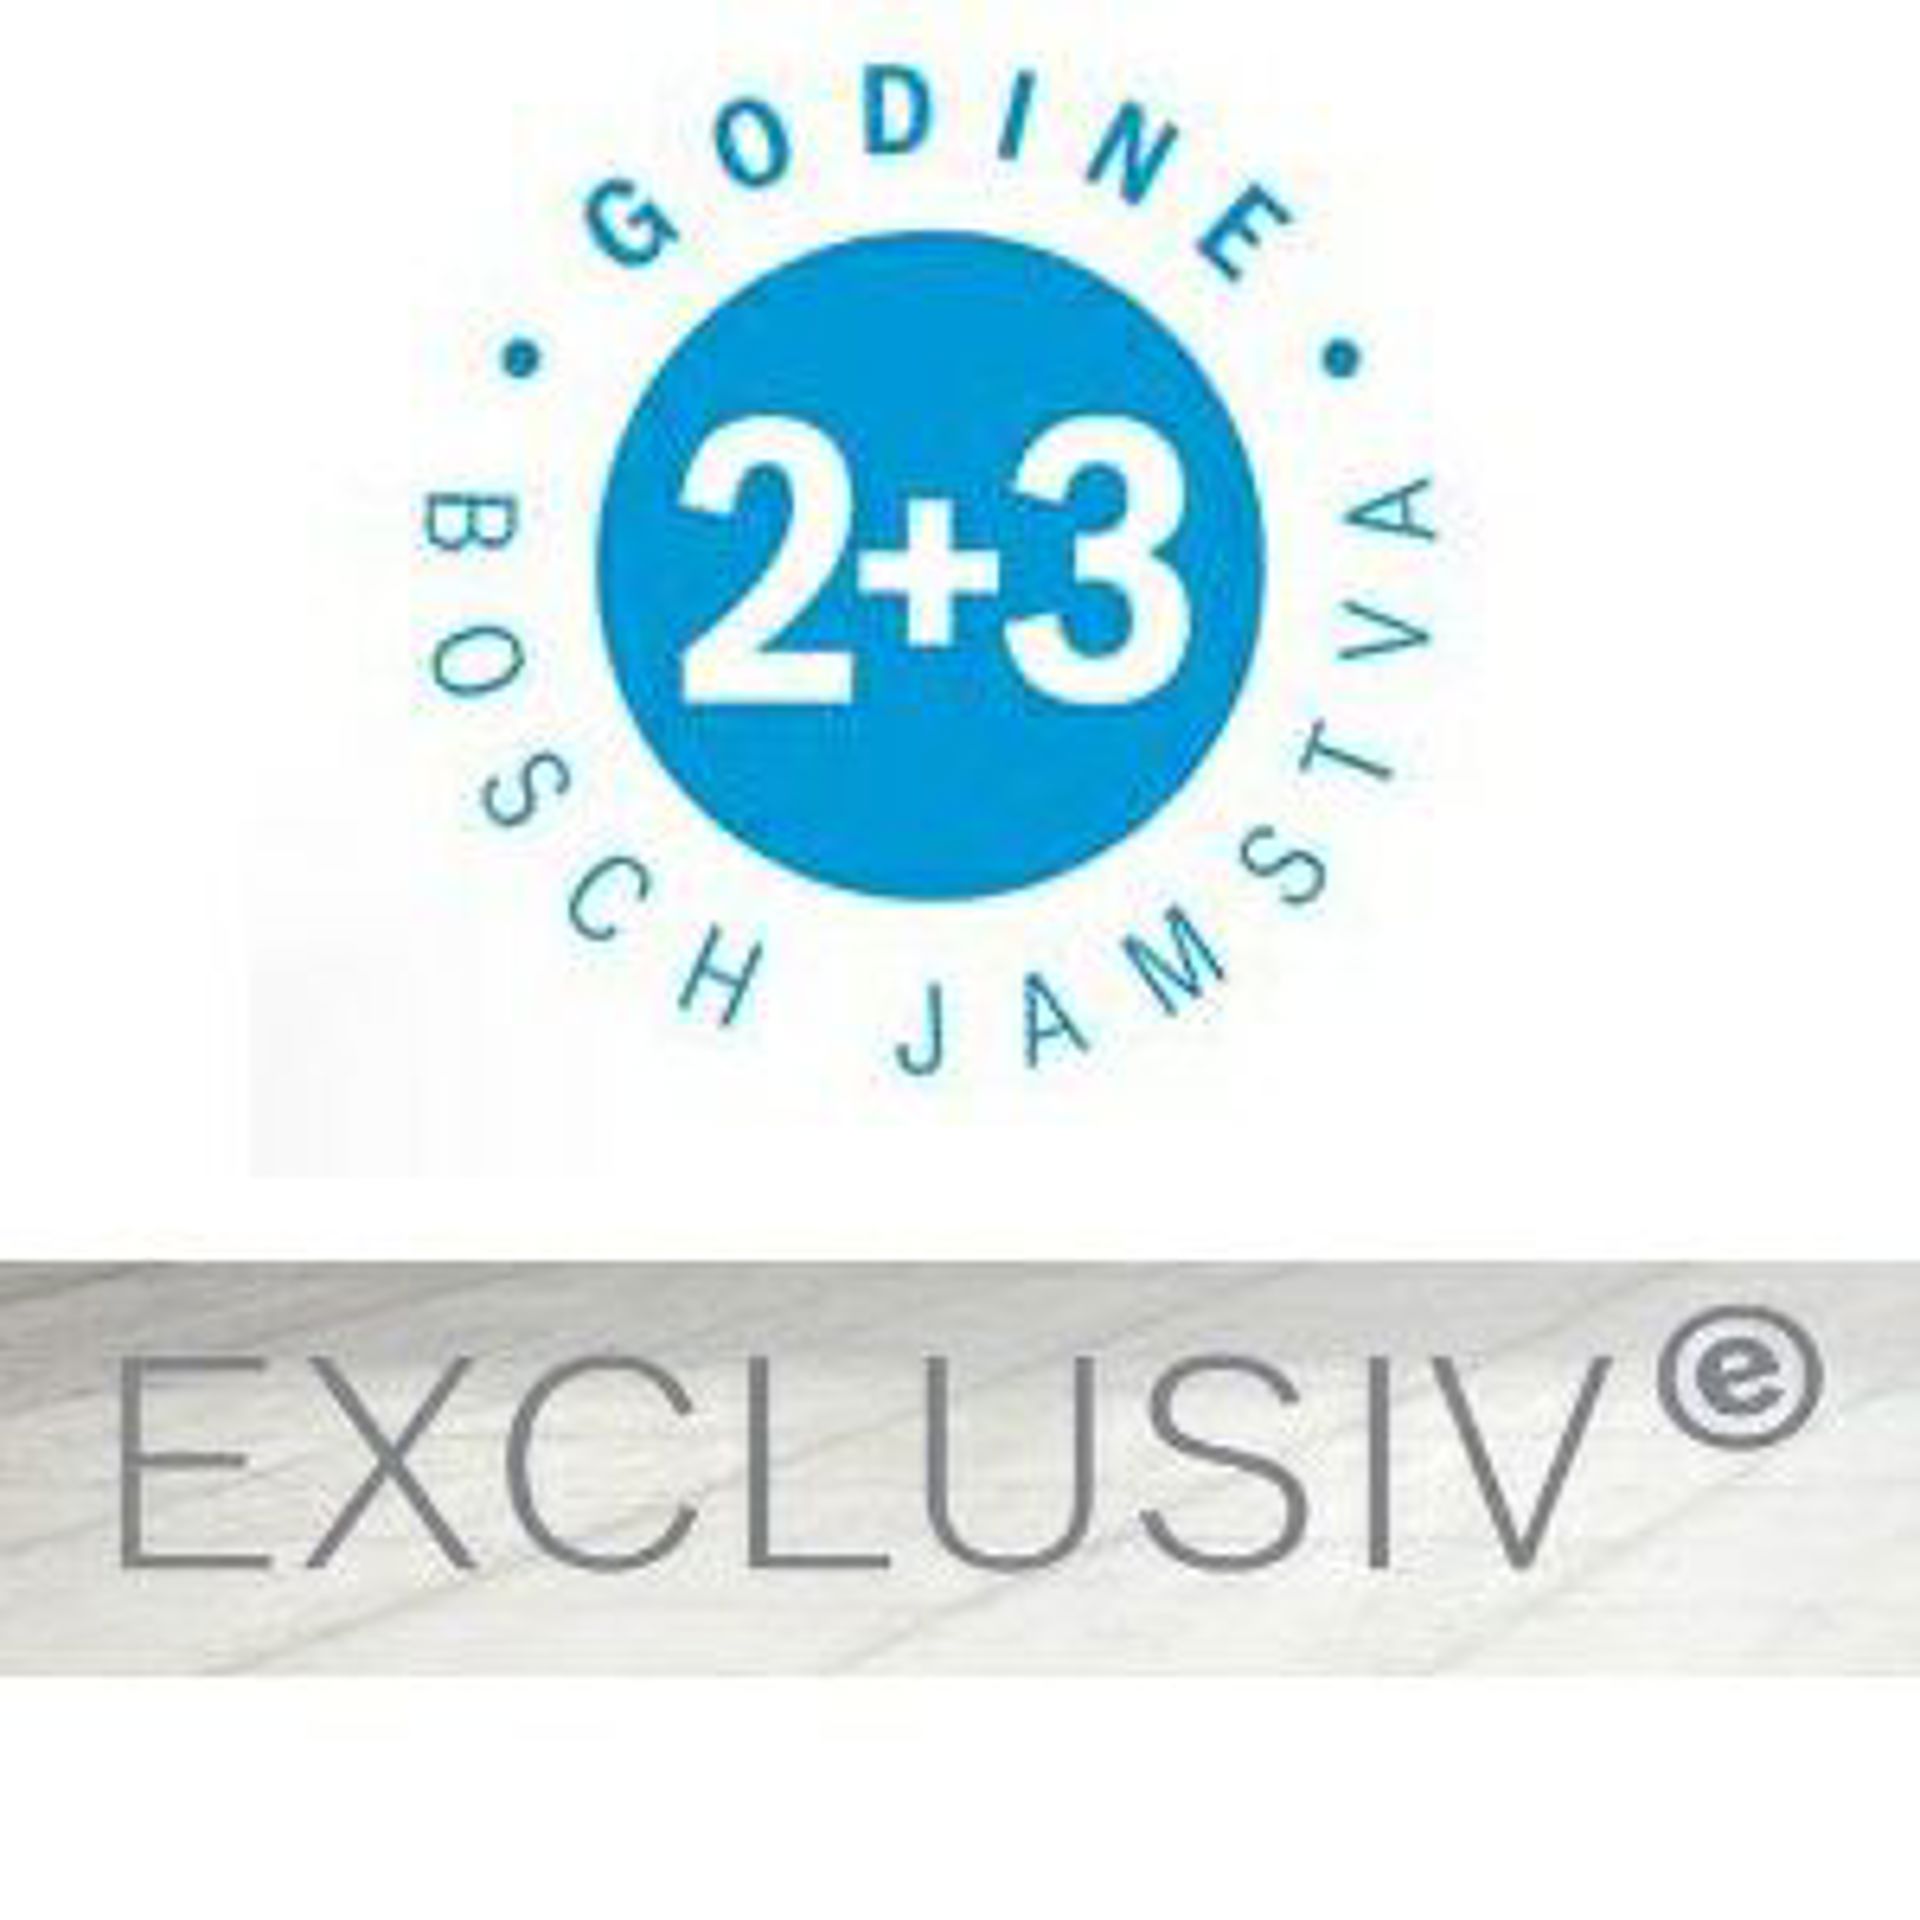 Bosch Exclusiv perilice rublja - akcija produljenog jamstva